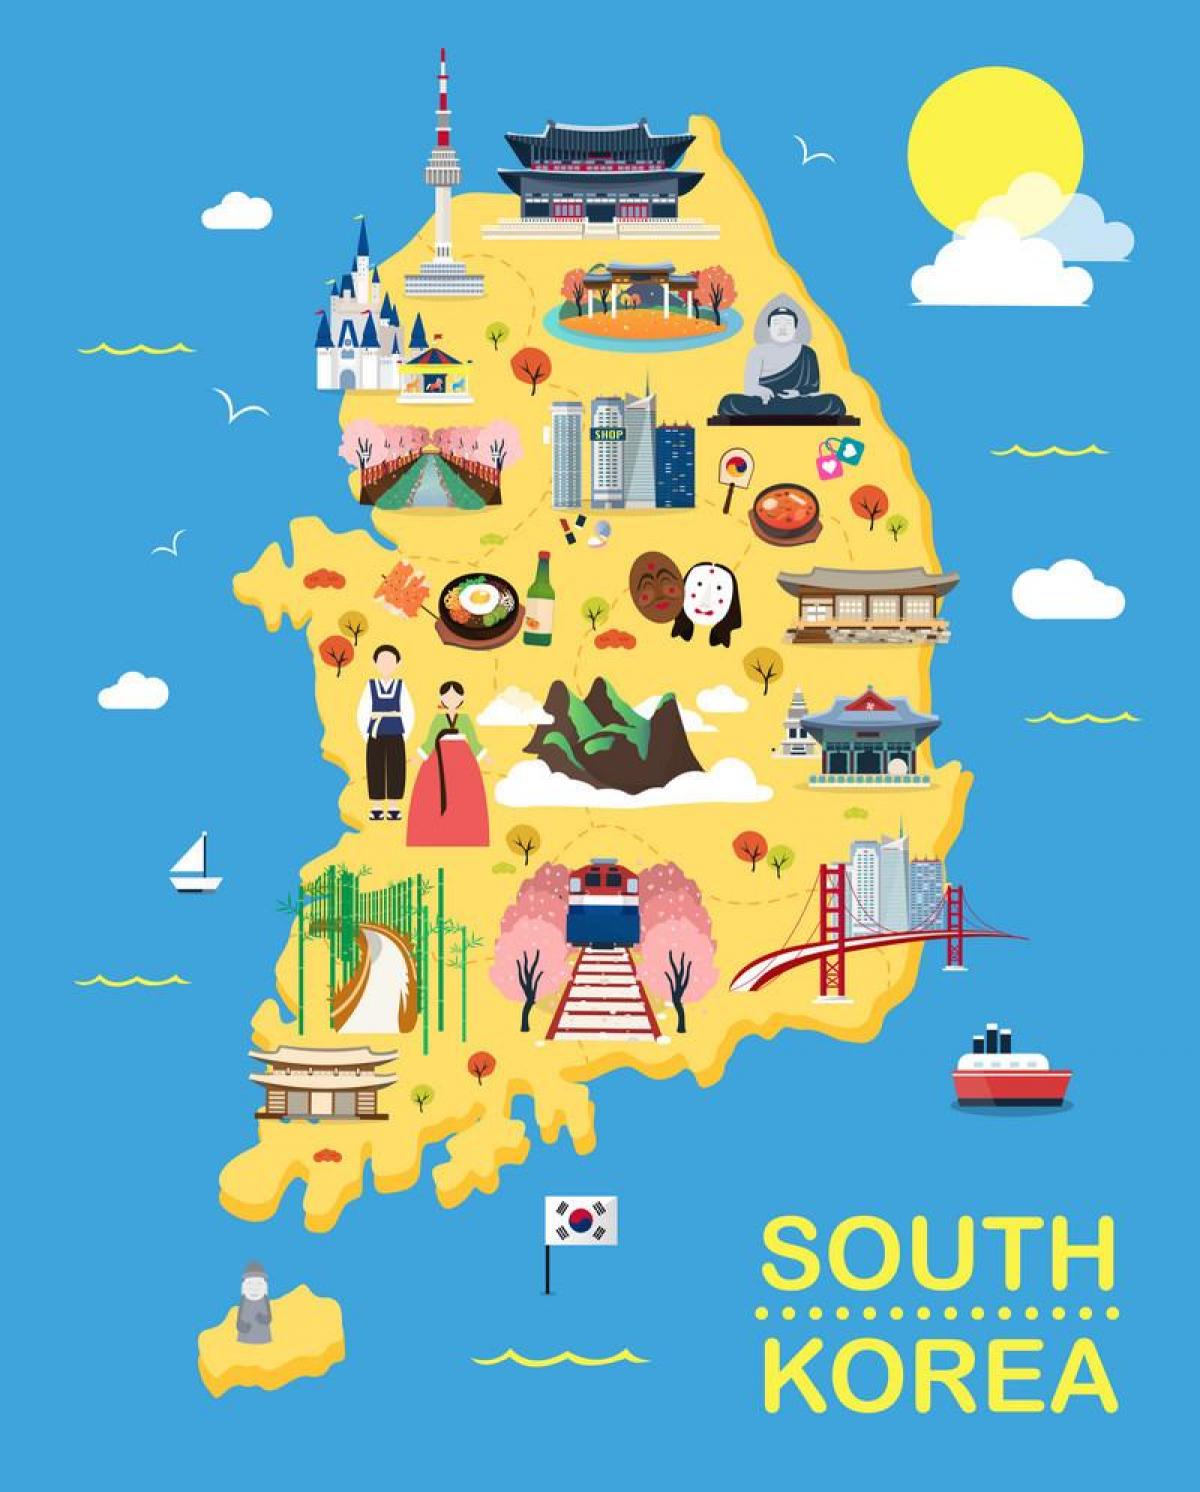 Corea del Sud (ROK) mappa delle attrazioni turistiche